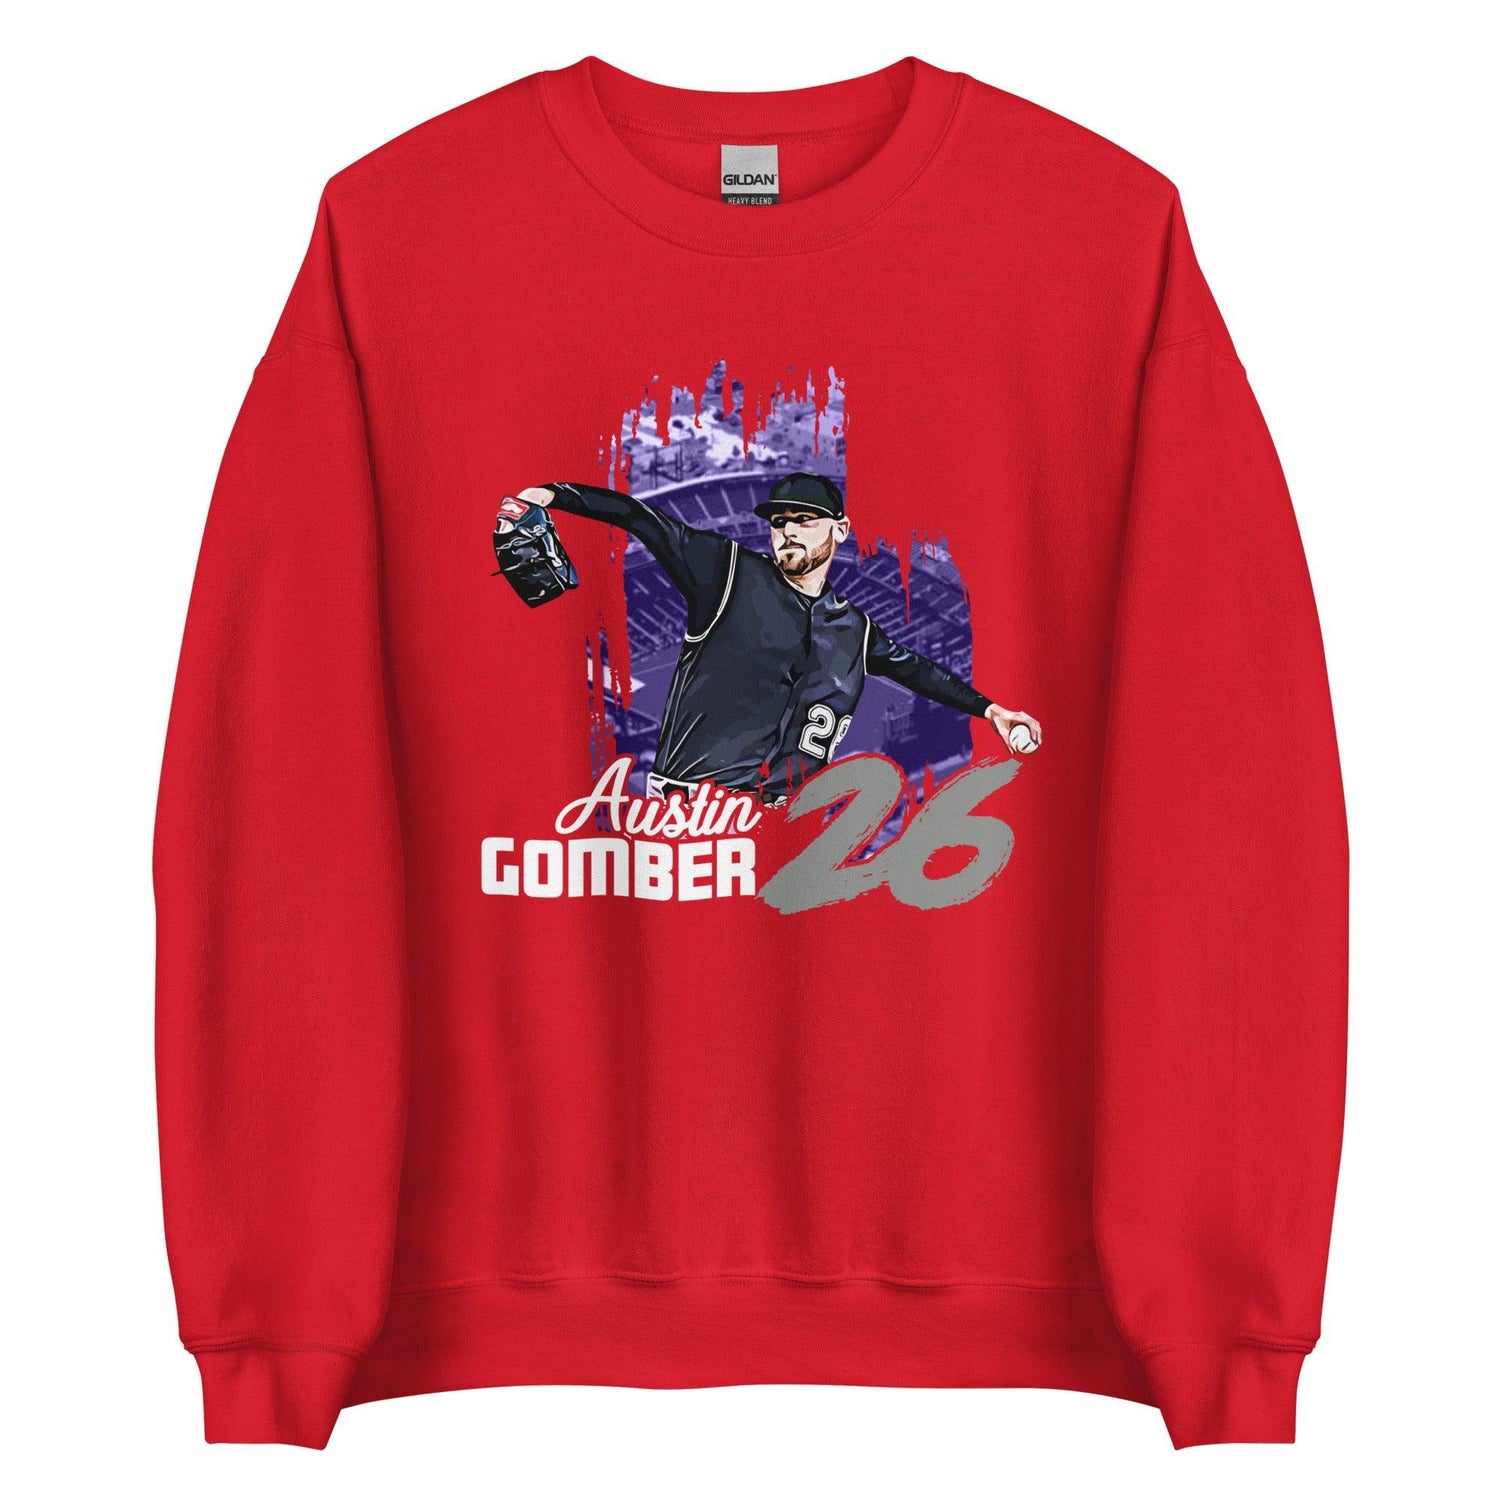 Austin Gomber "Strike" Sweatshirt - Fan Arch